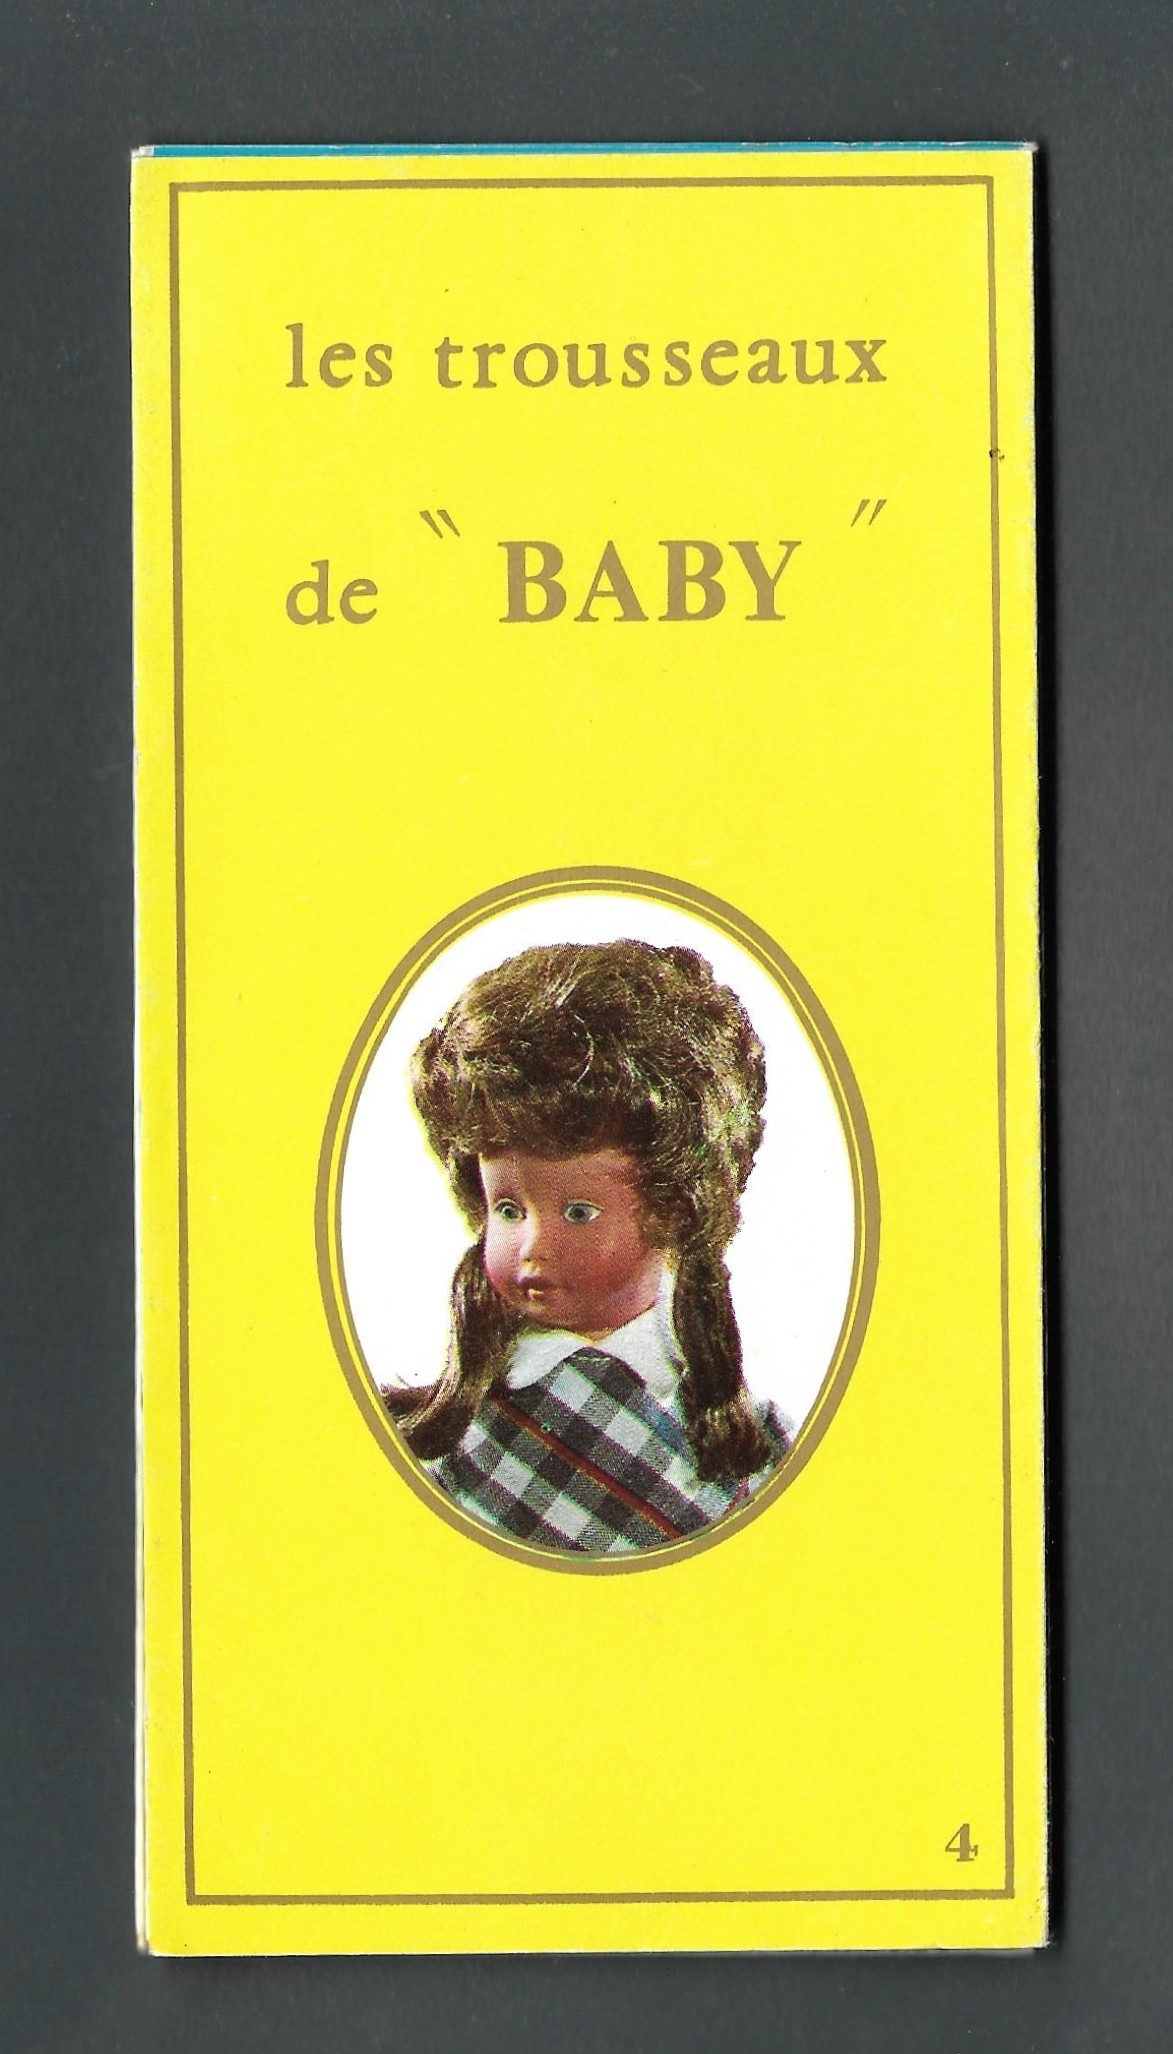 Catalogue les trousseaux de MILY – BABY – JACKY de GEGE